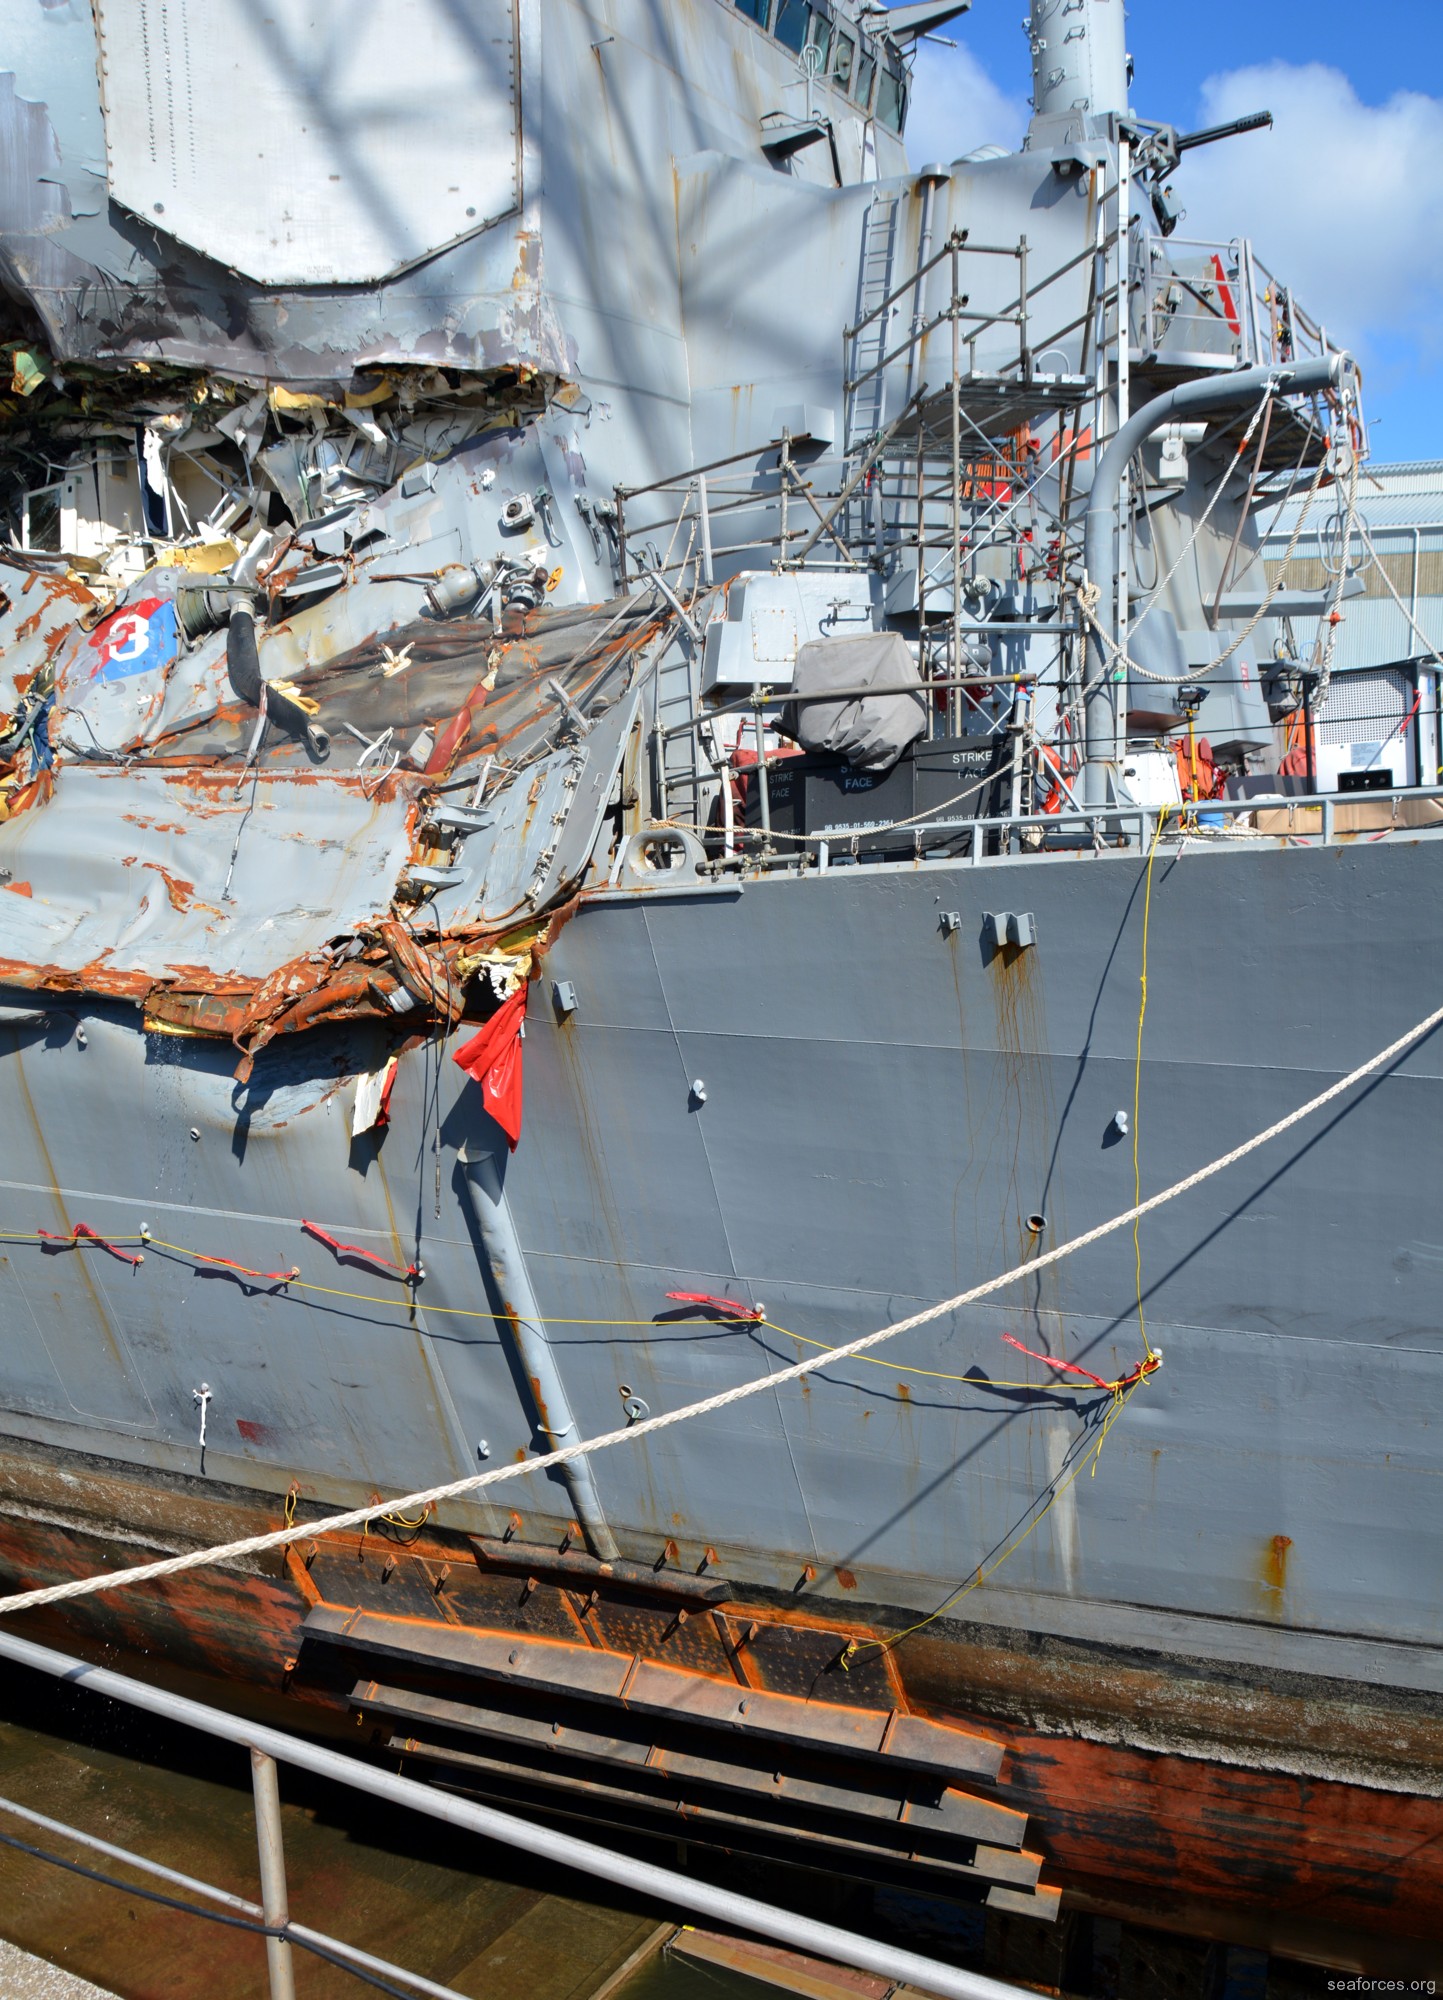 ddg-62 uss fitzgerald guided missile destroyer us navy 148 damage